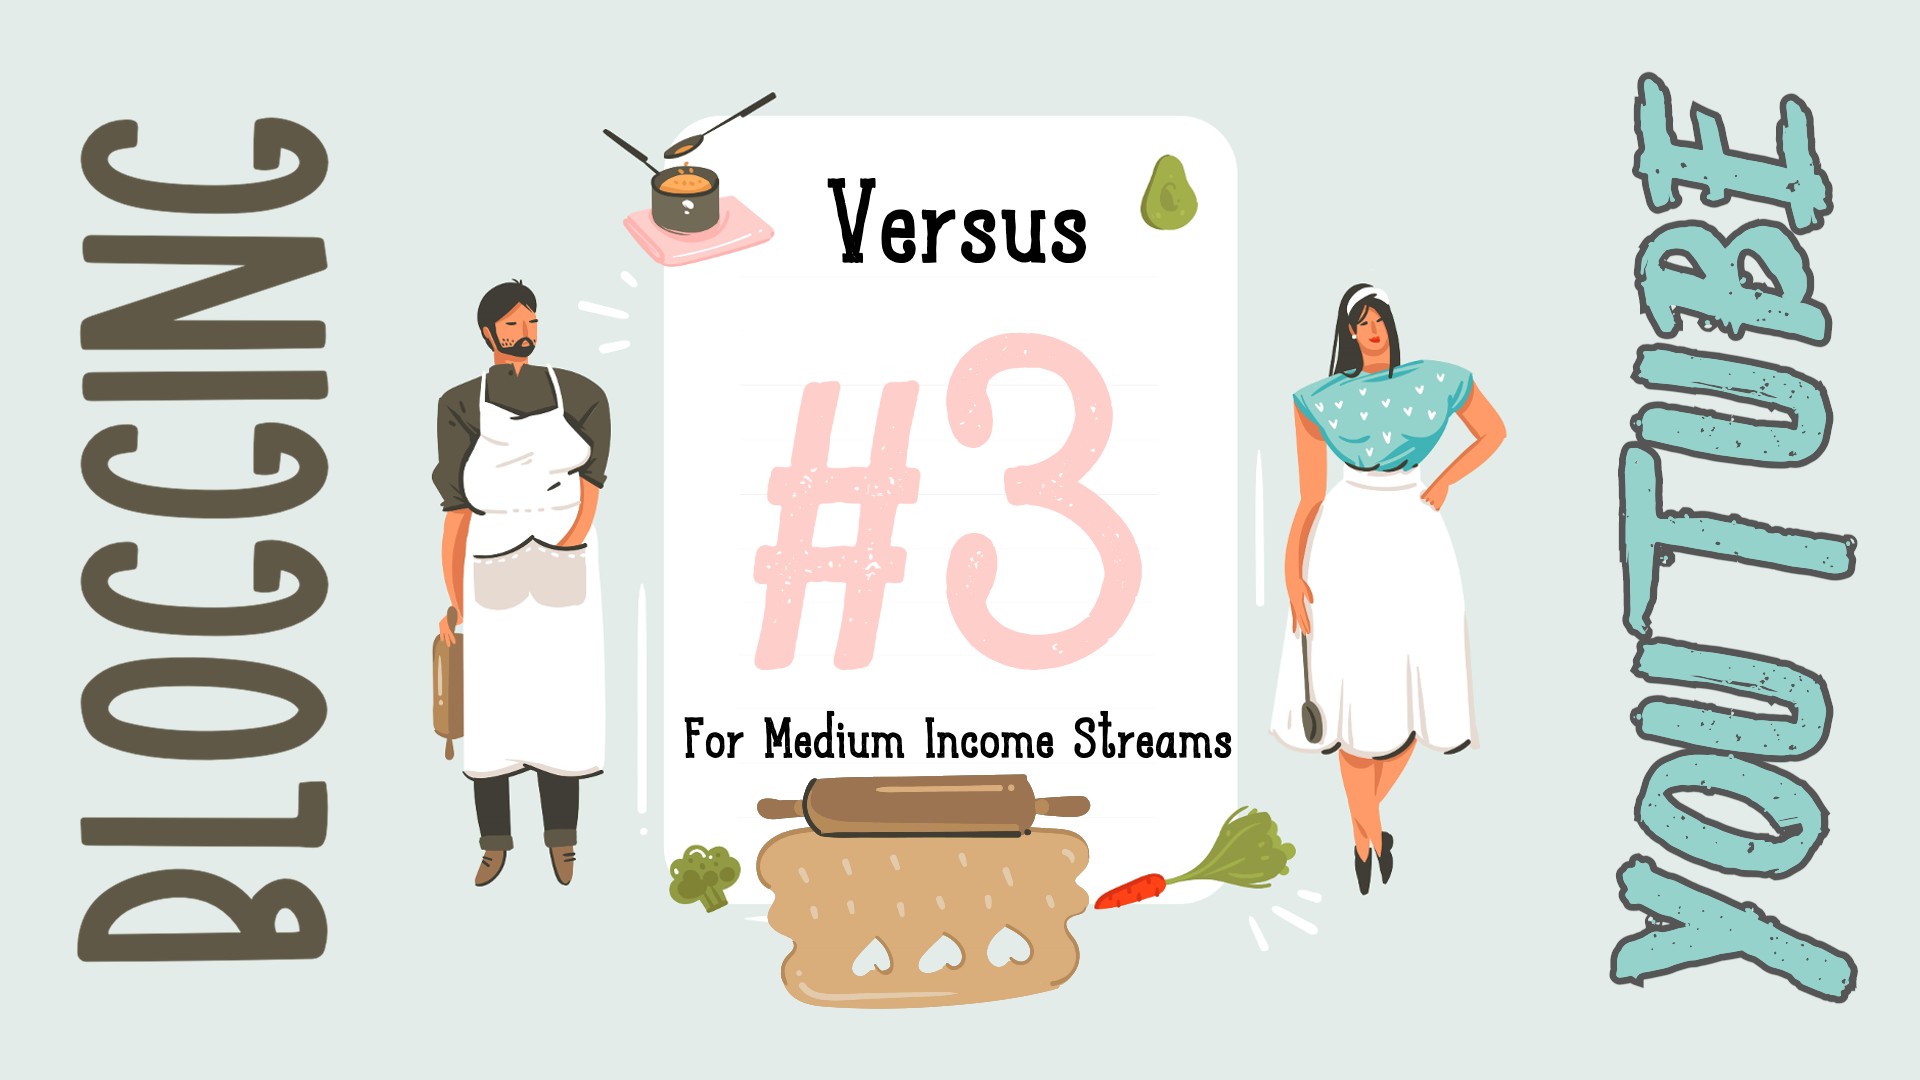 Blogging vs YouTube #3: For Medium Income Streams